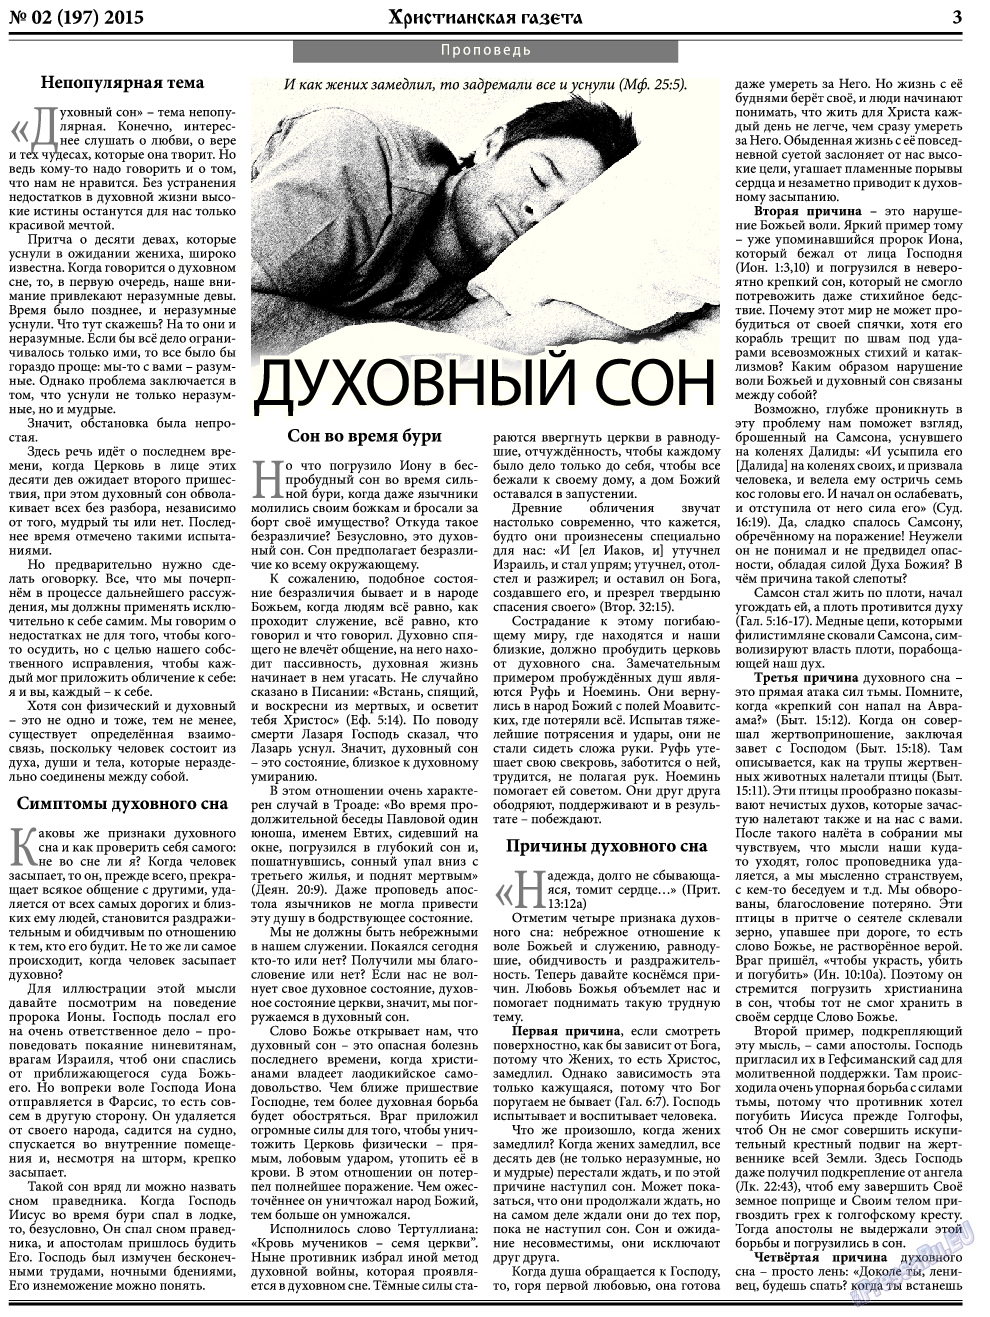 Христианская газета, газета. 2015 №2 стр.3